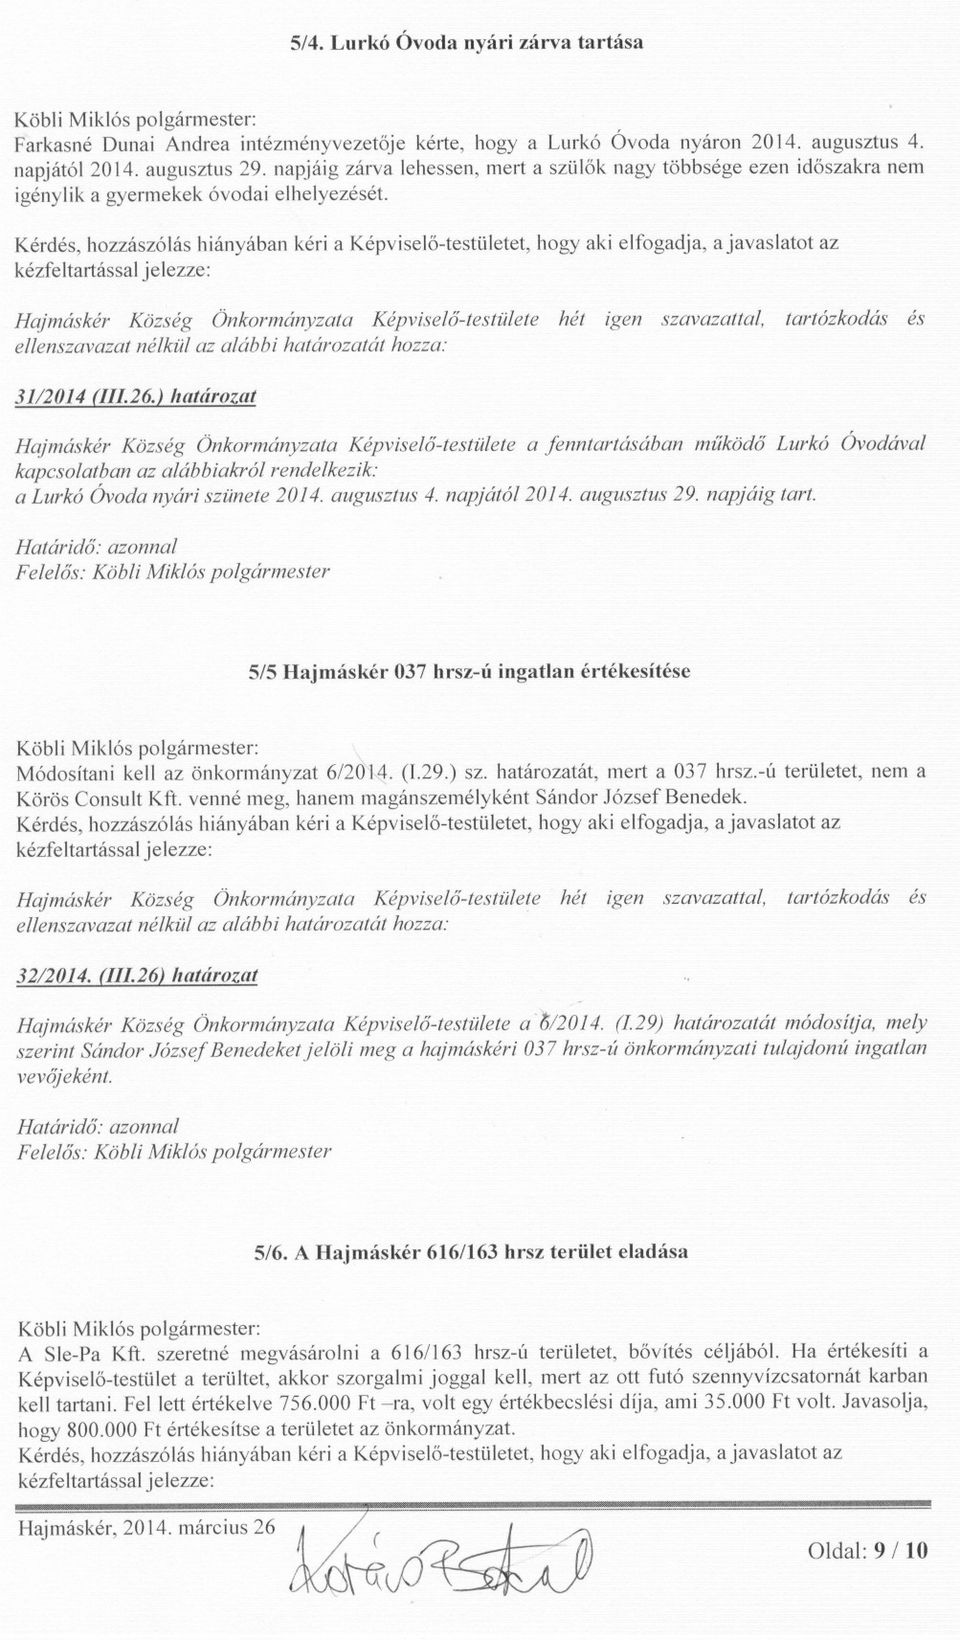 ) határozat Hajmáskér Község Önkormányzata Képviselo-testülete a fenntartásában muködo Lurkó Óvodával kapcsolatban az alábbiakról rendelkezik: a Lurkó ÓVoda nyári szünete 2014. augusztus 4.